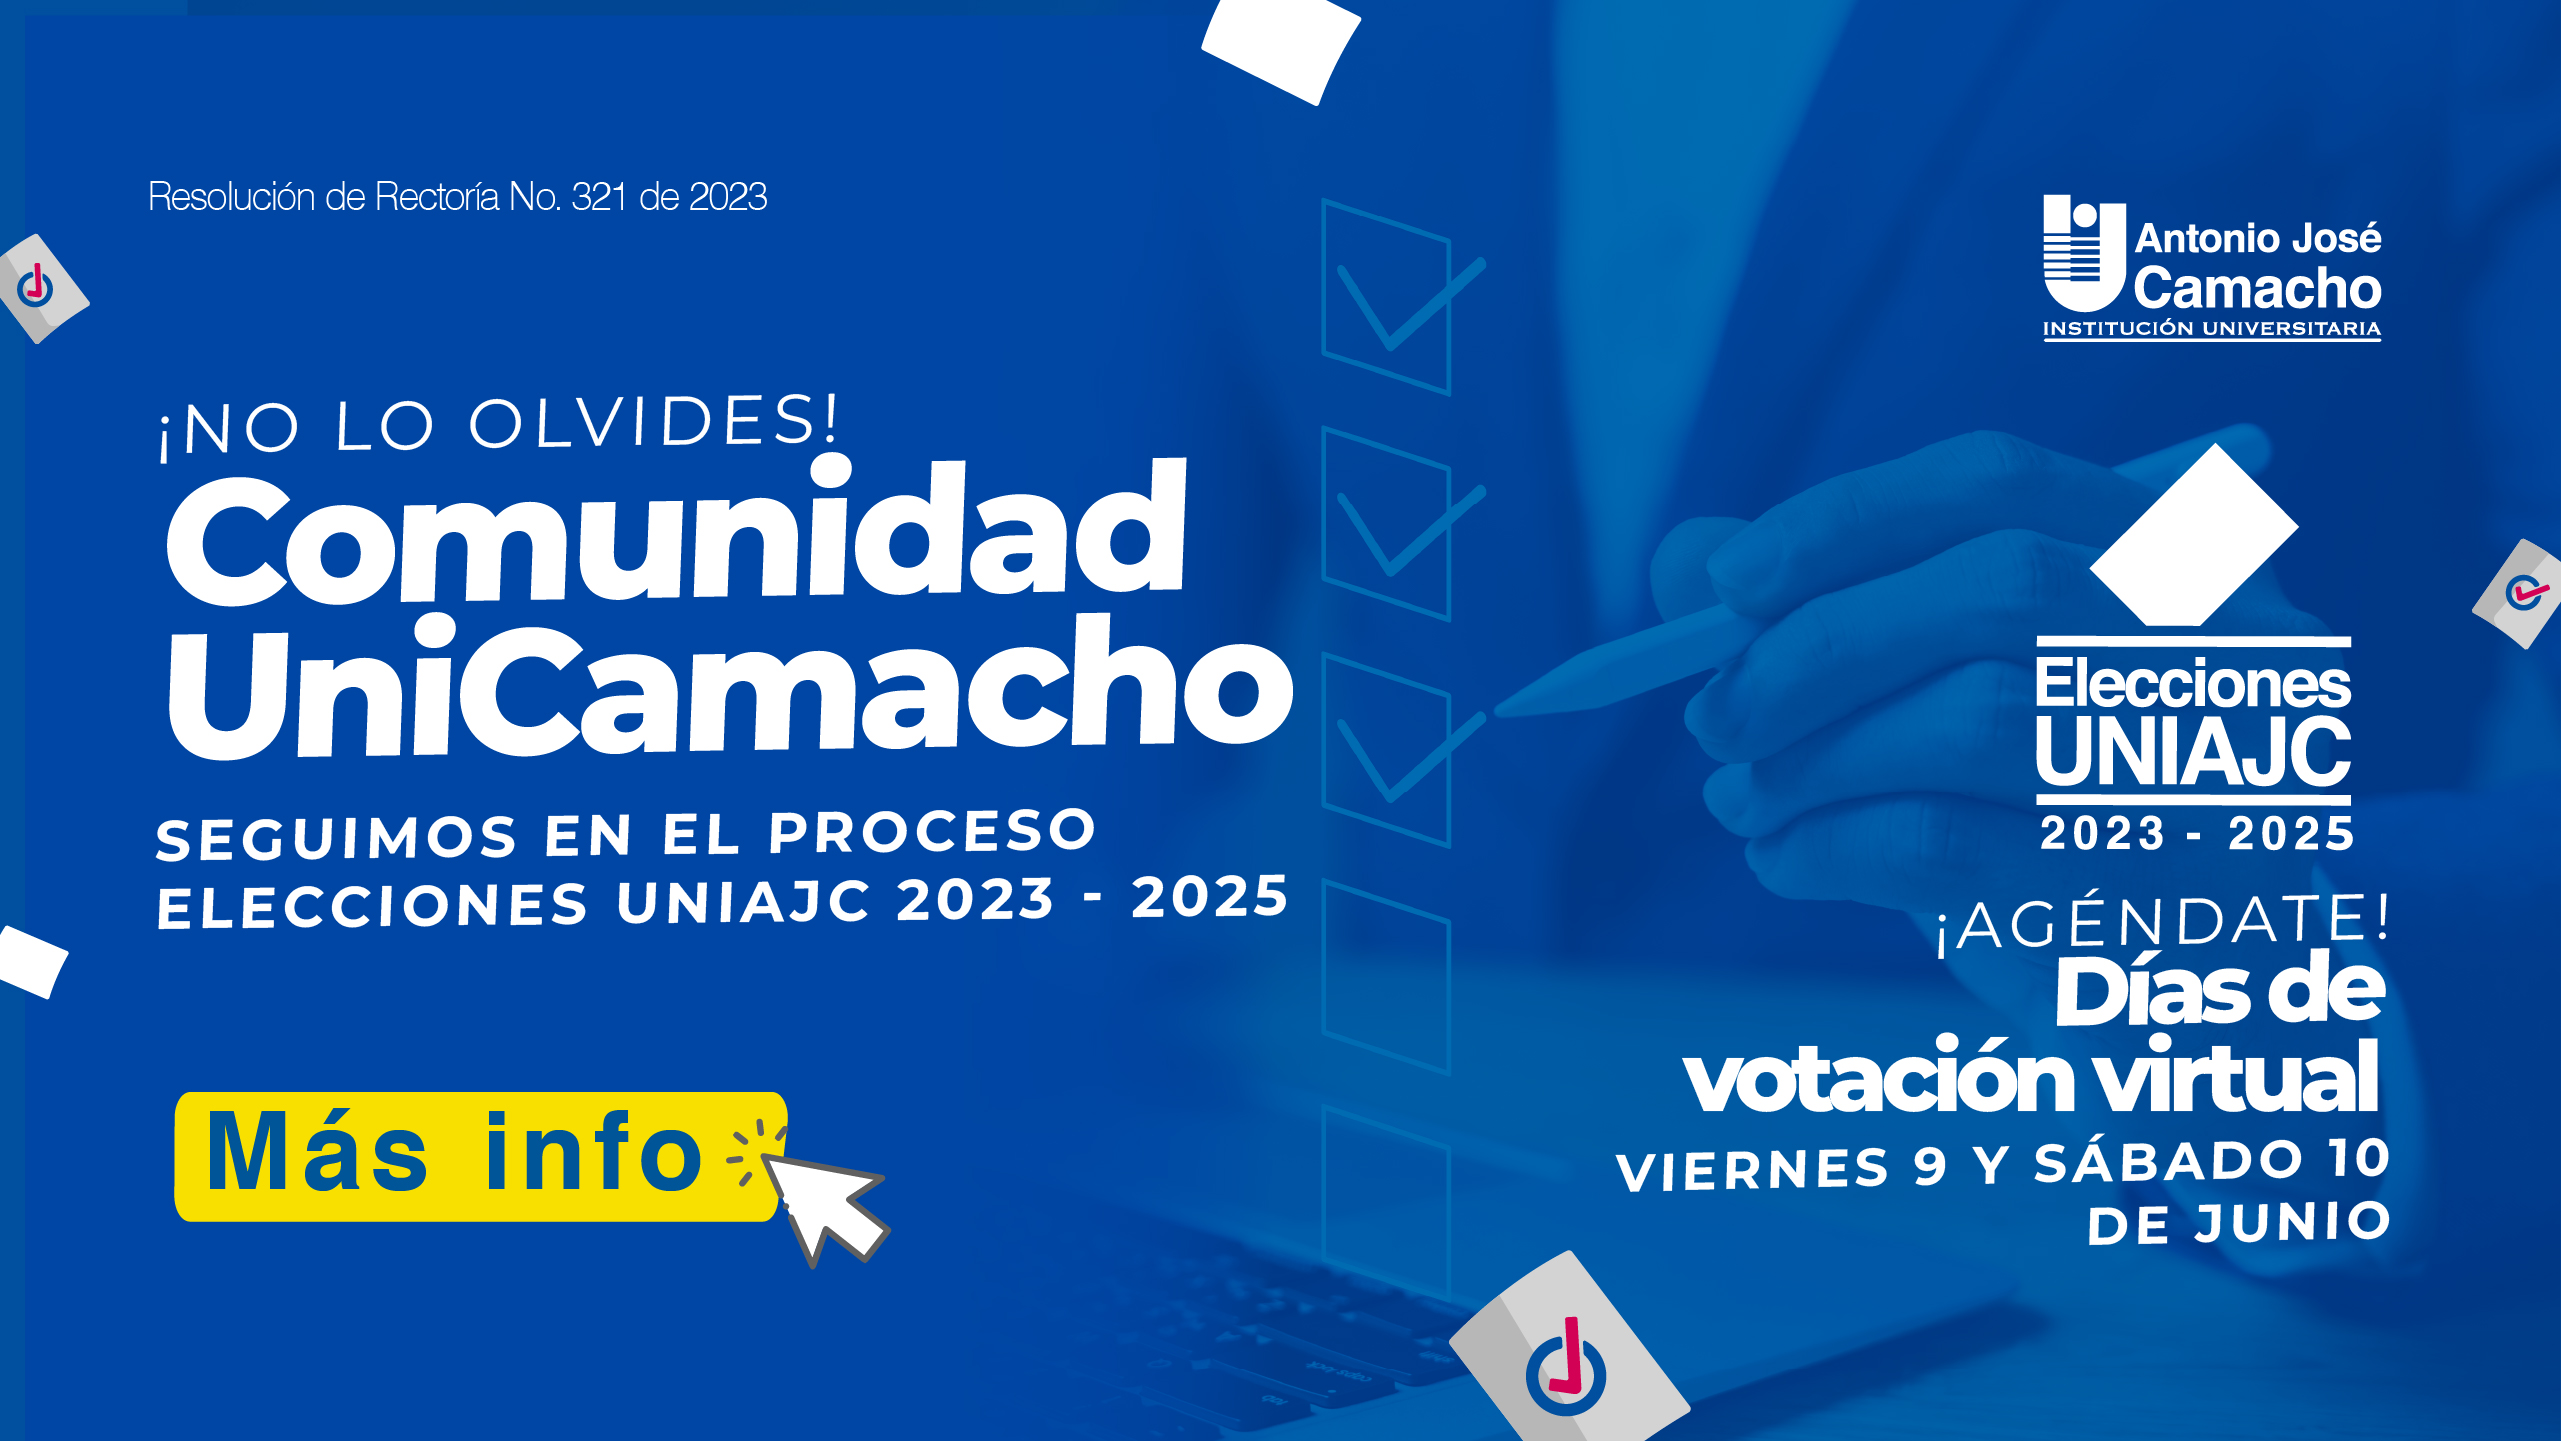 Agéndate para las Elecciones Uniajc 2023 – 2025